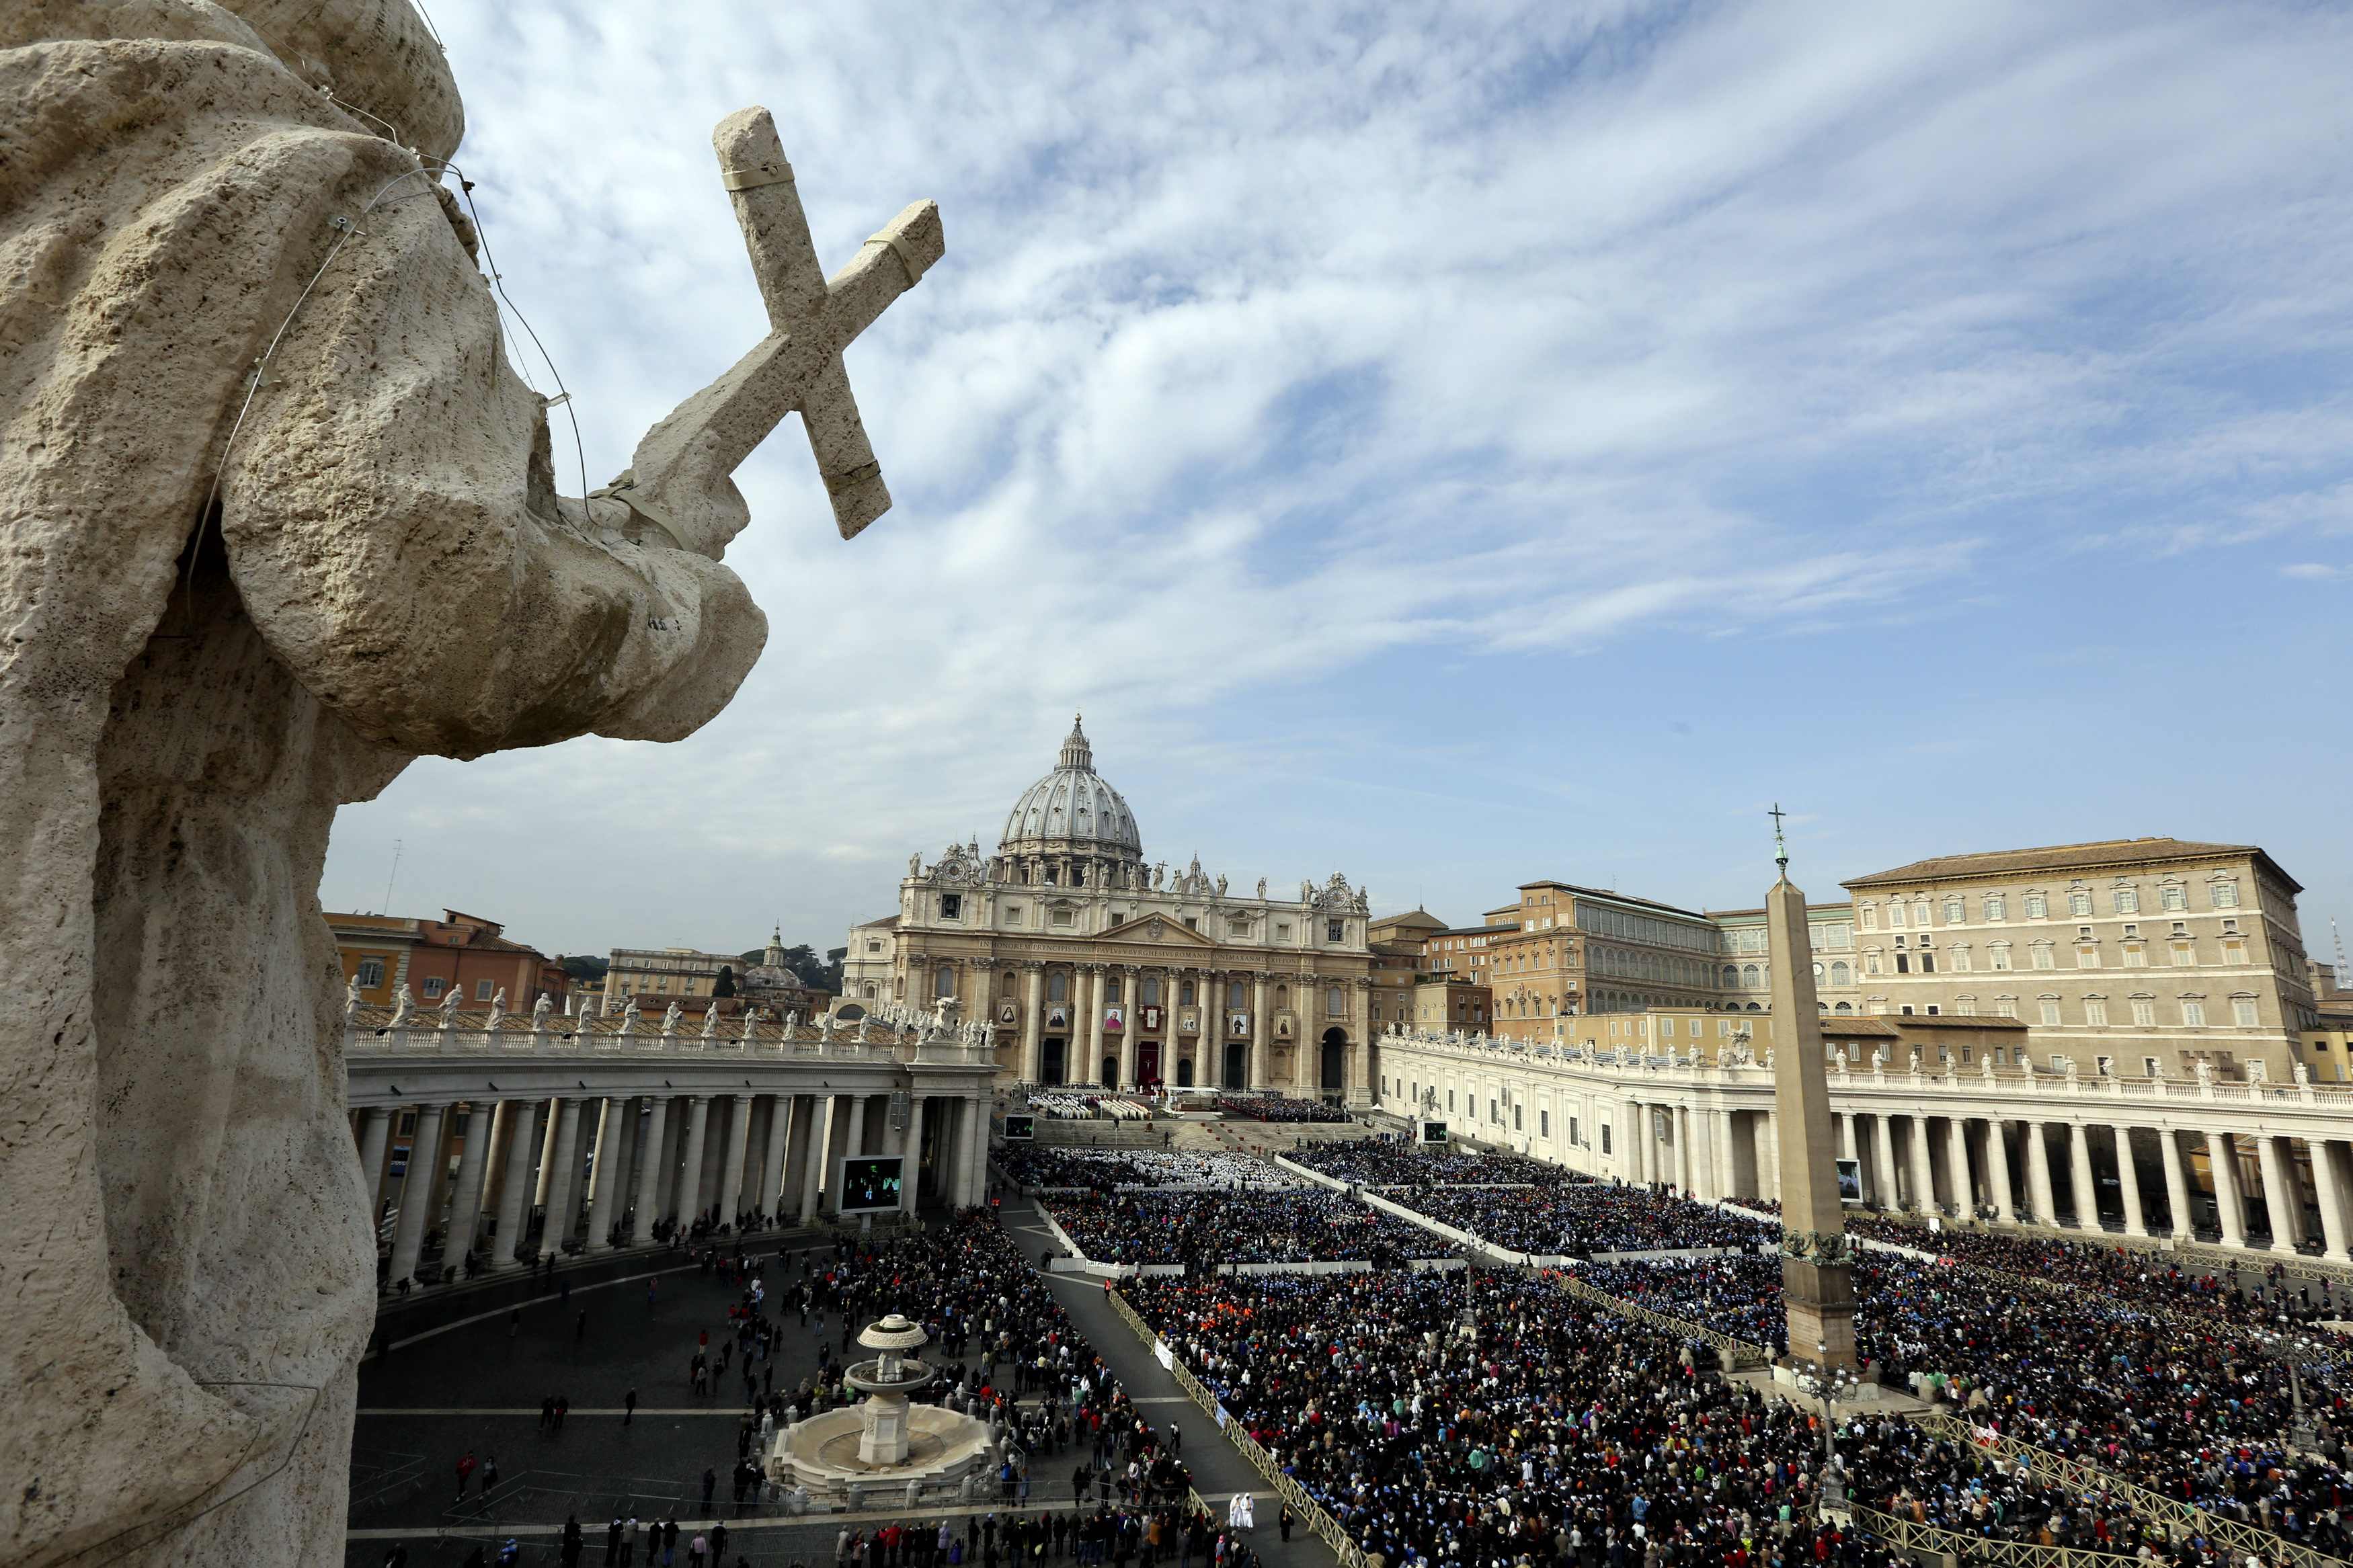 Comisión del Vaticano llega este mes a Bolivia para preparar visita del Papa